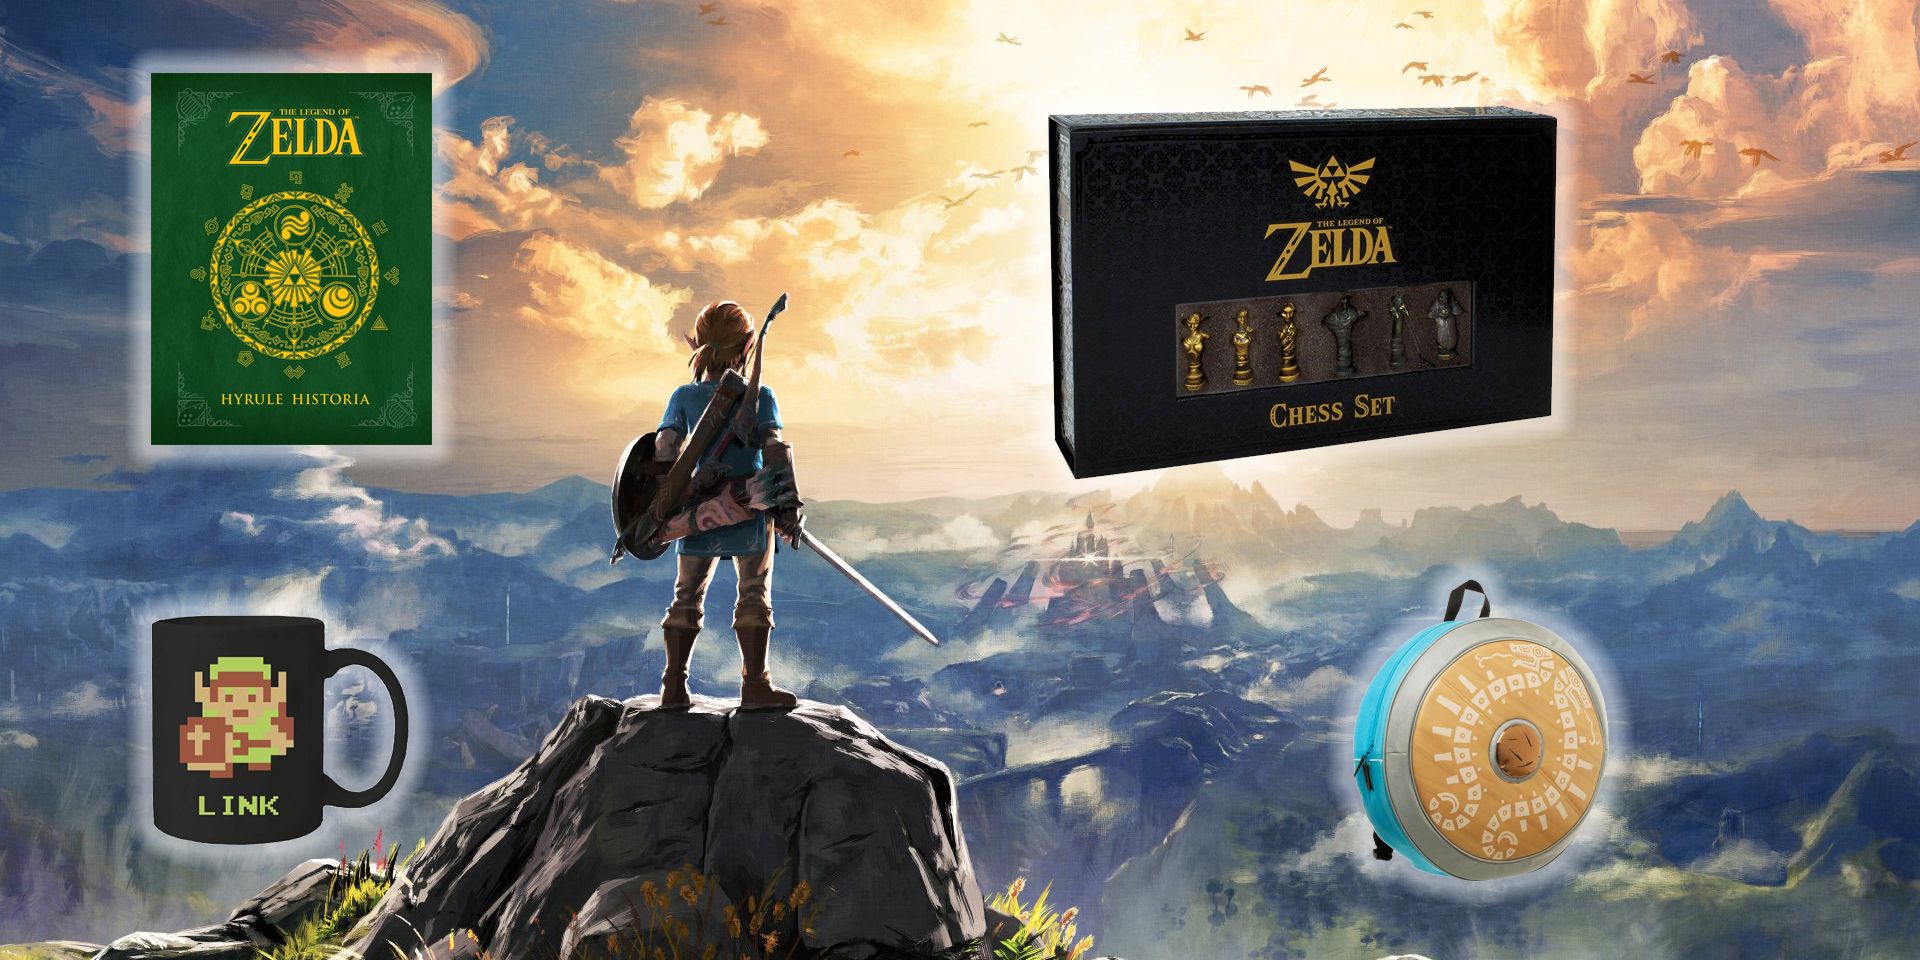 10 Gifts Every True Zelda Fan Would Love